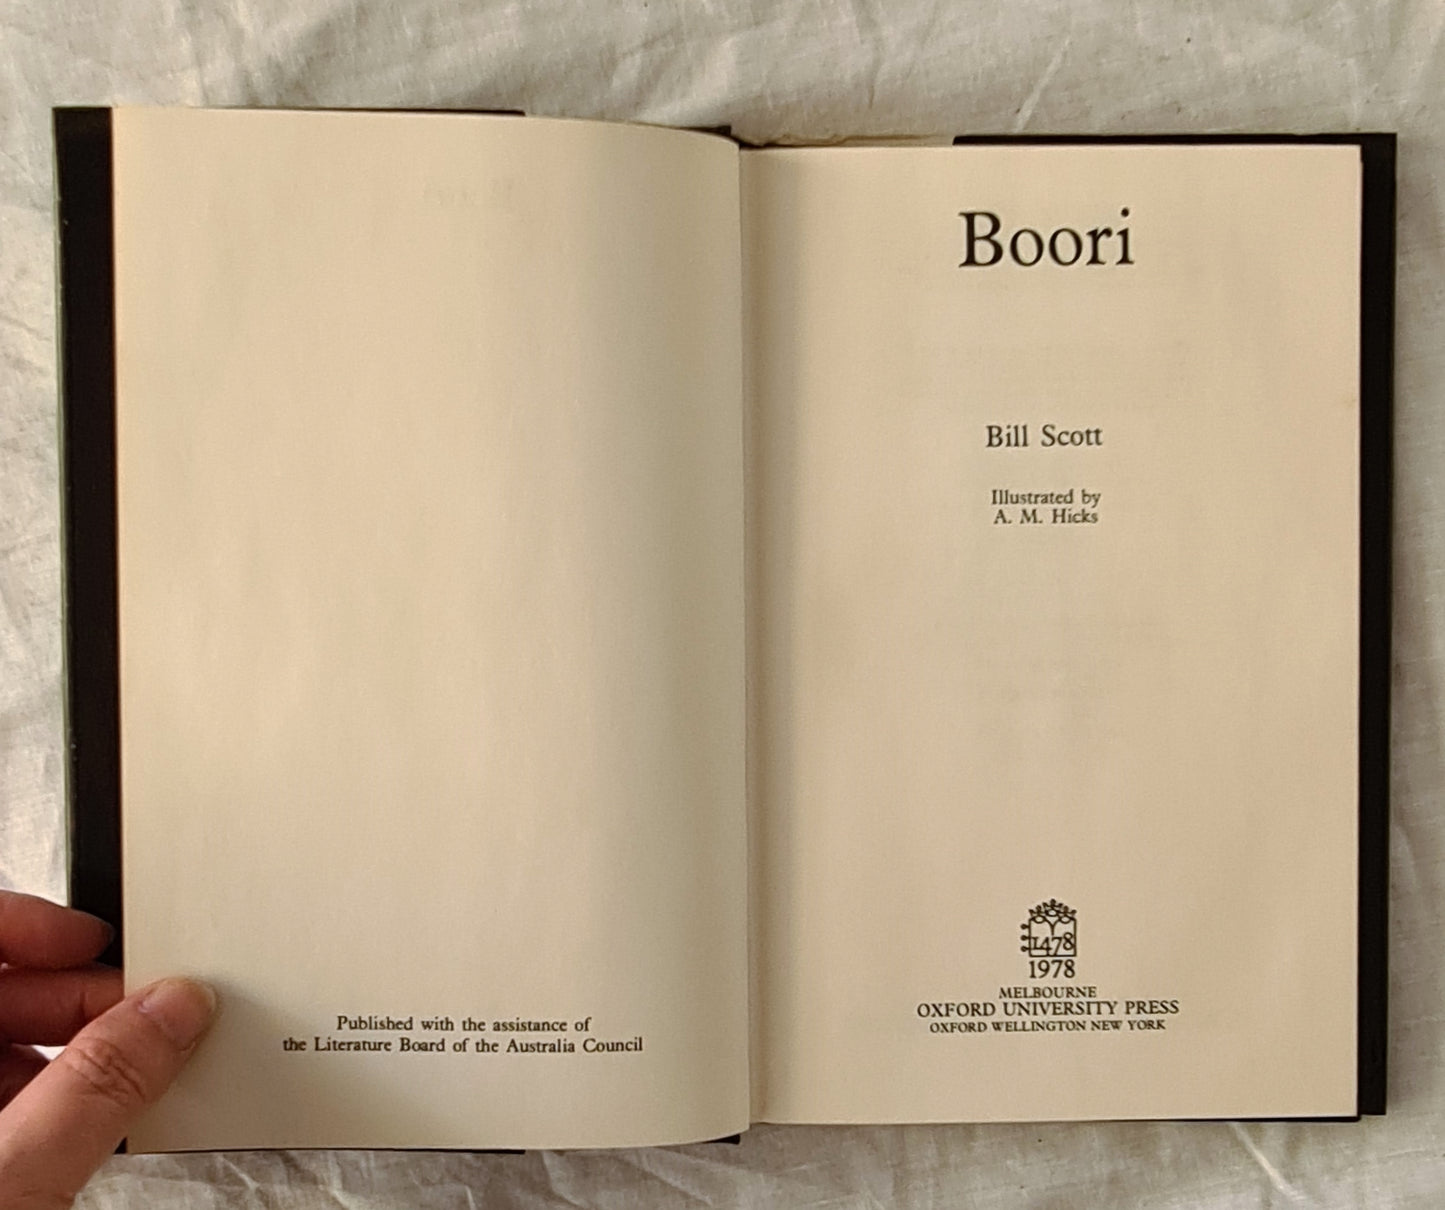 Boori by Bill Scott